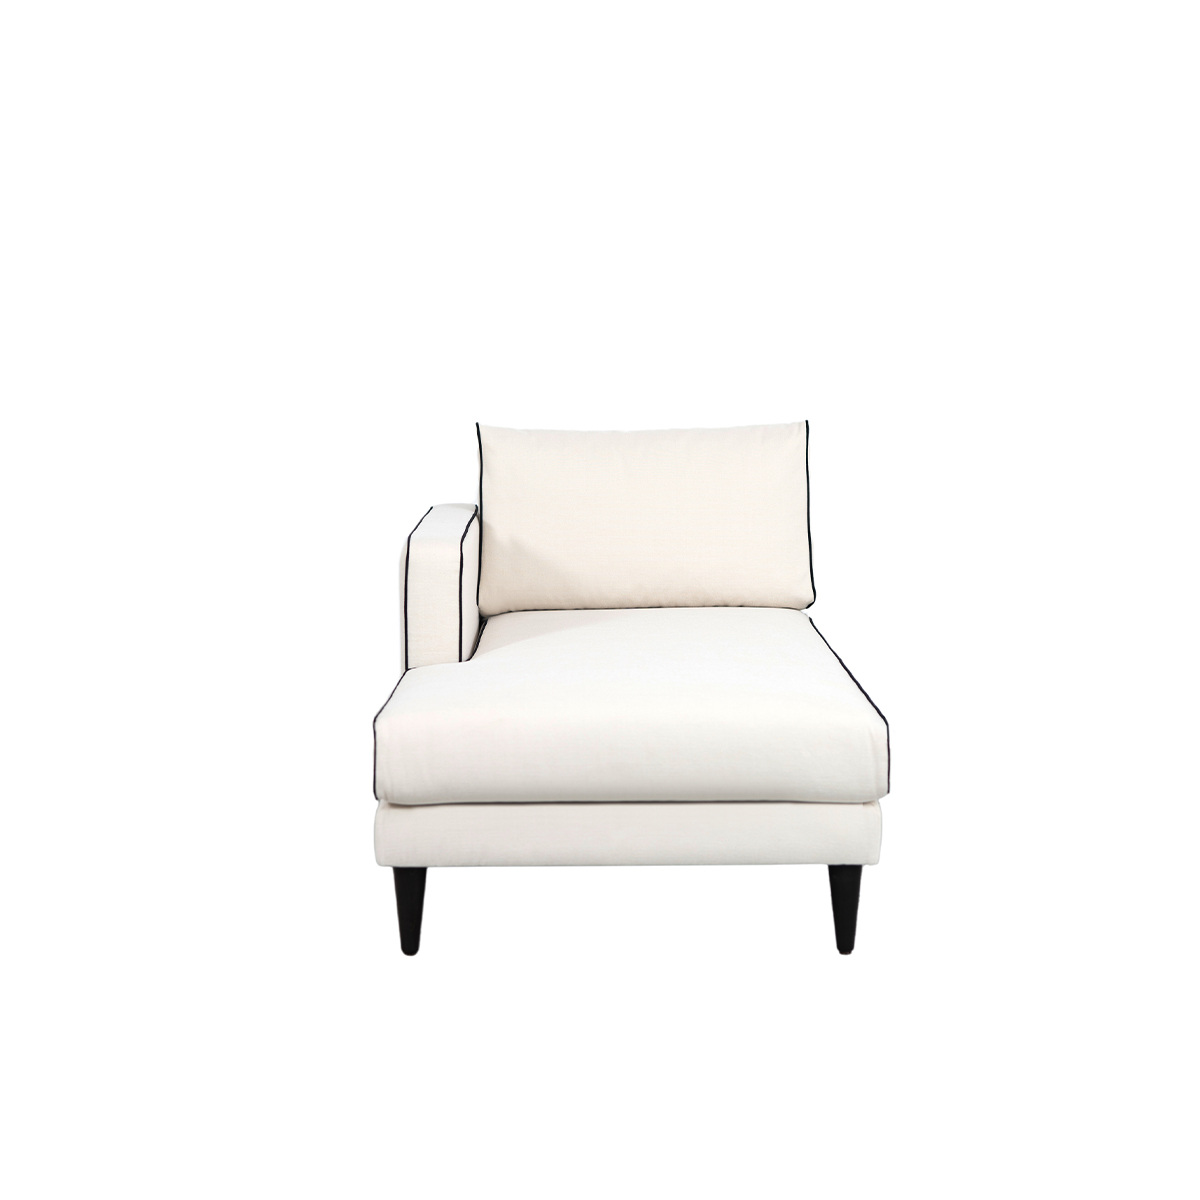 Noa sofa - Left armrest, Different Sizes - Cotton - image 2